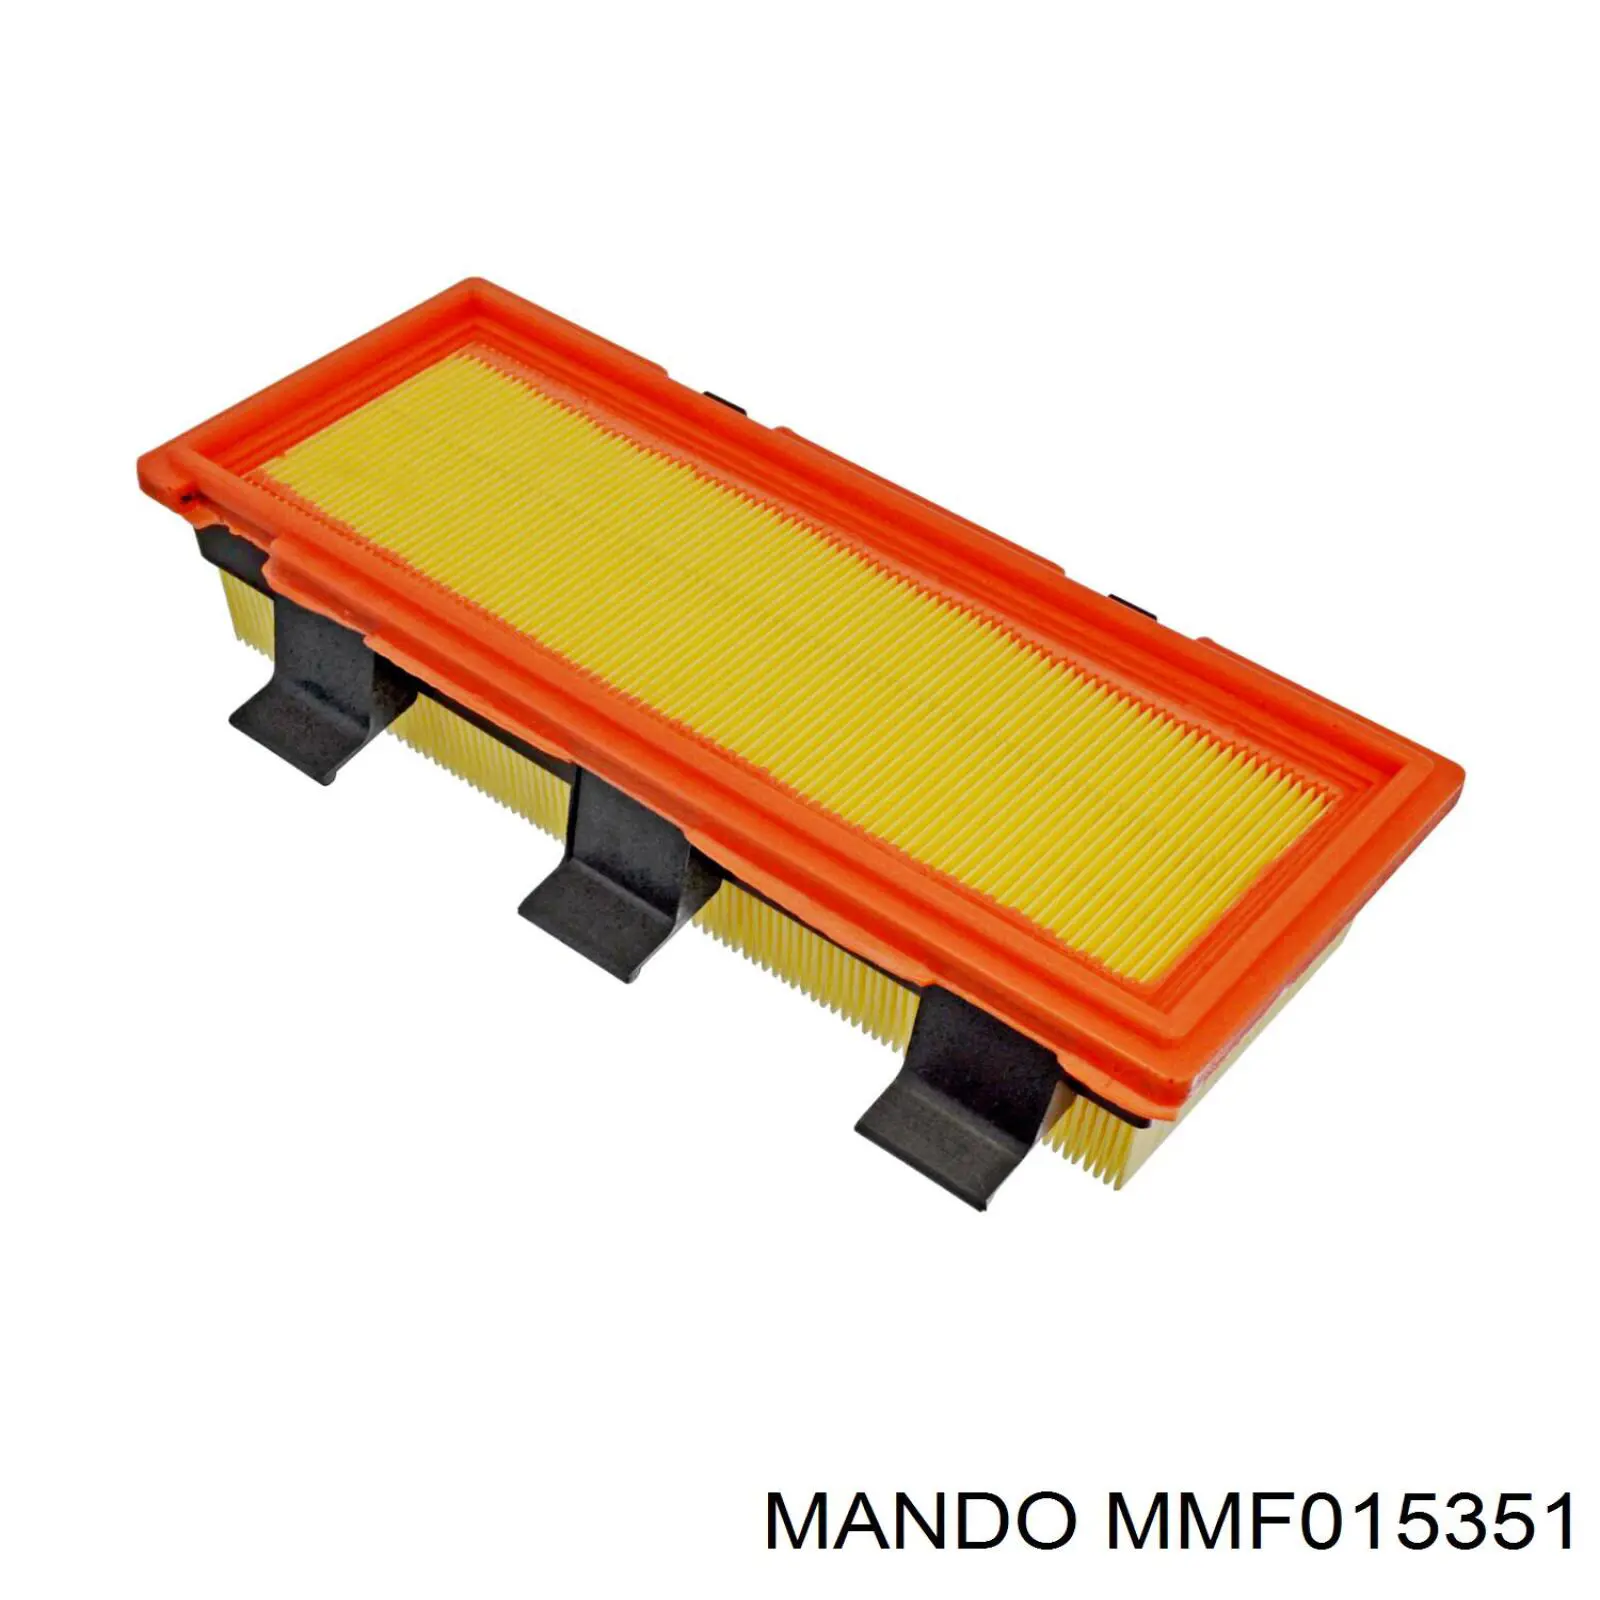 MMF015351 Mando воздушный фильтр